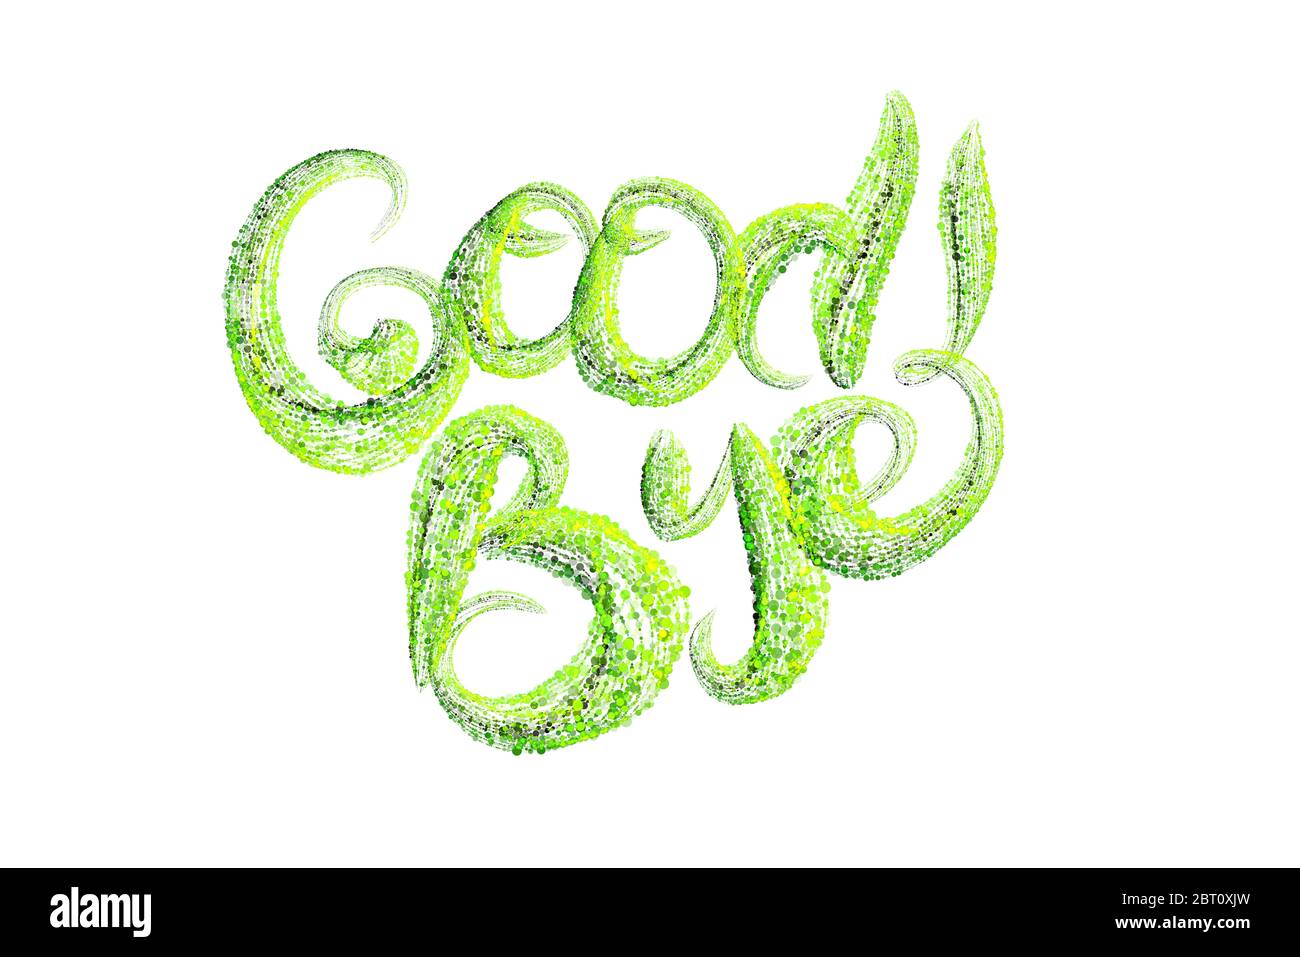 Wort Schriftzug Good Bye von frischen grünen Bio-Kreisen gemacht Von Konfetti-Partikeln isoliert auf weißem Hintergrund Stockfoto